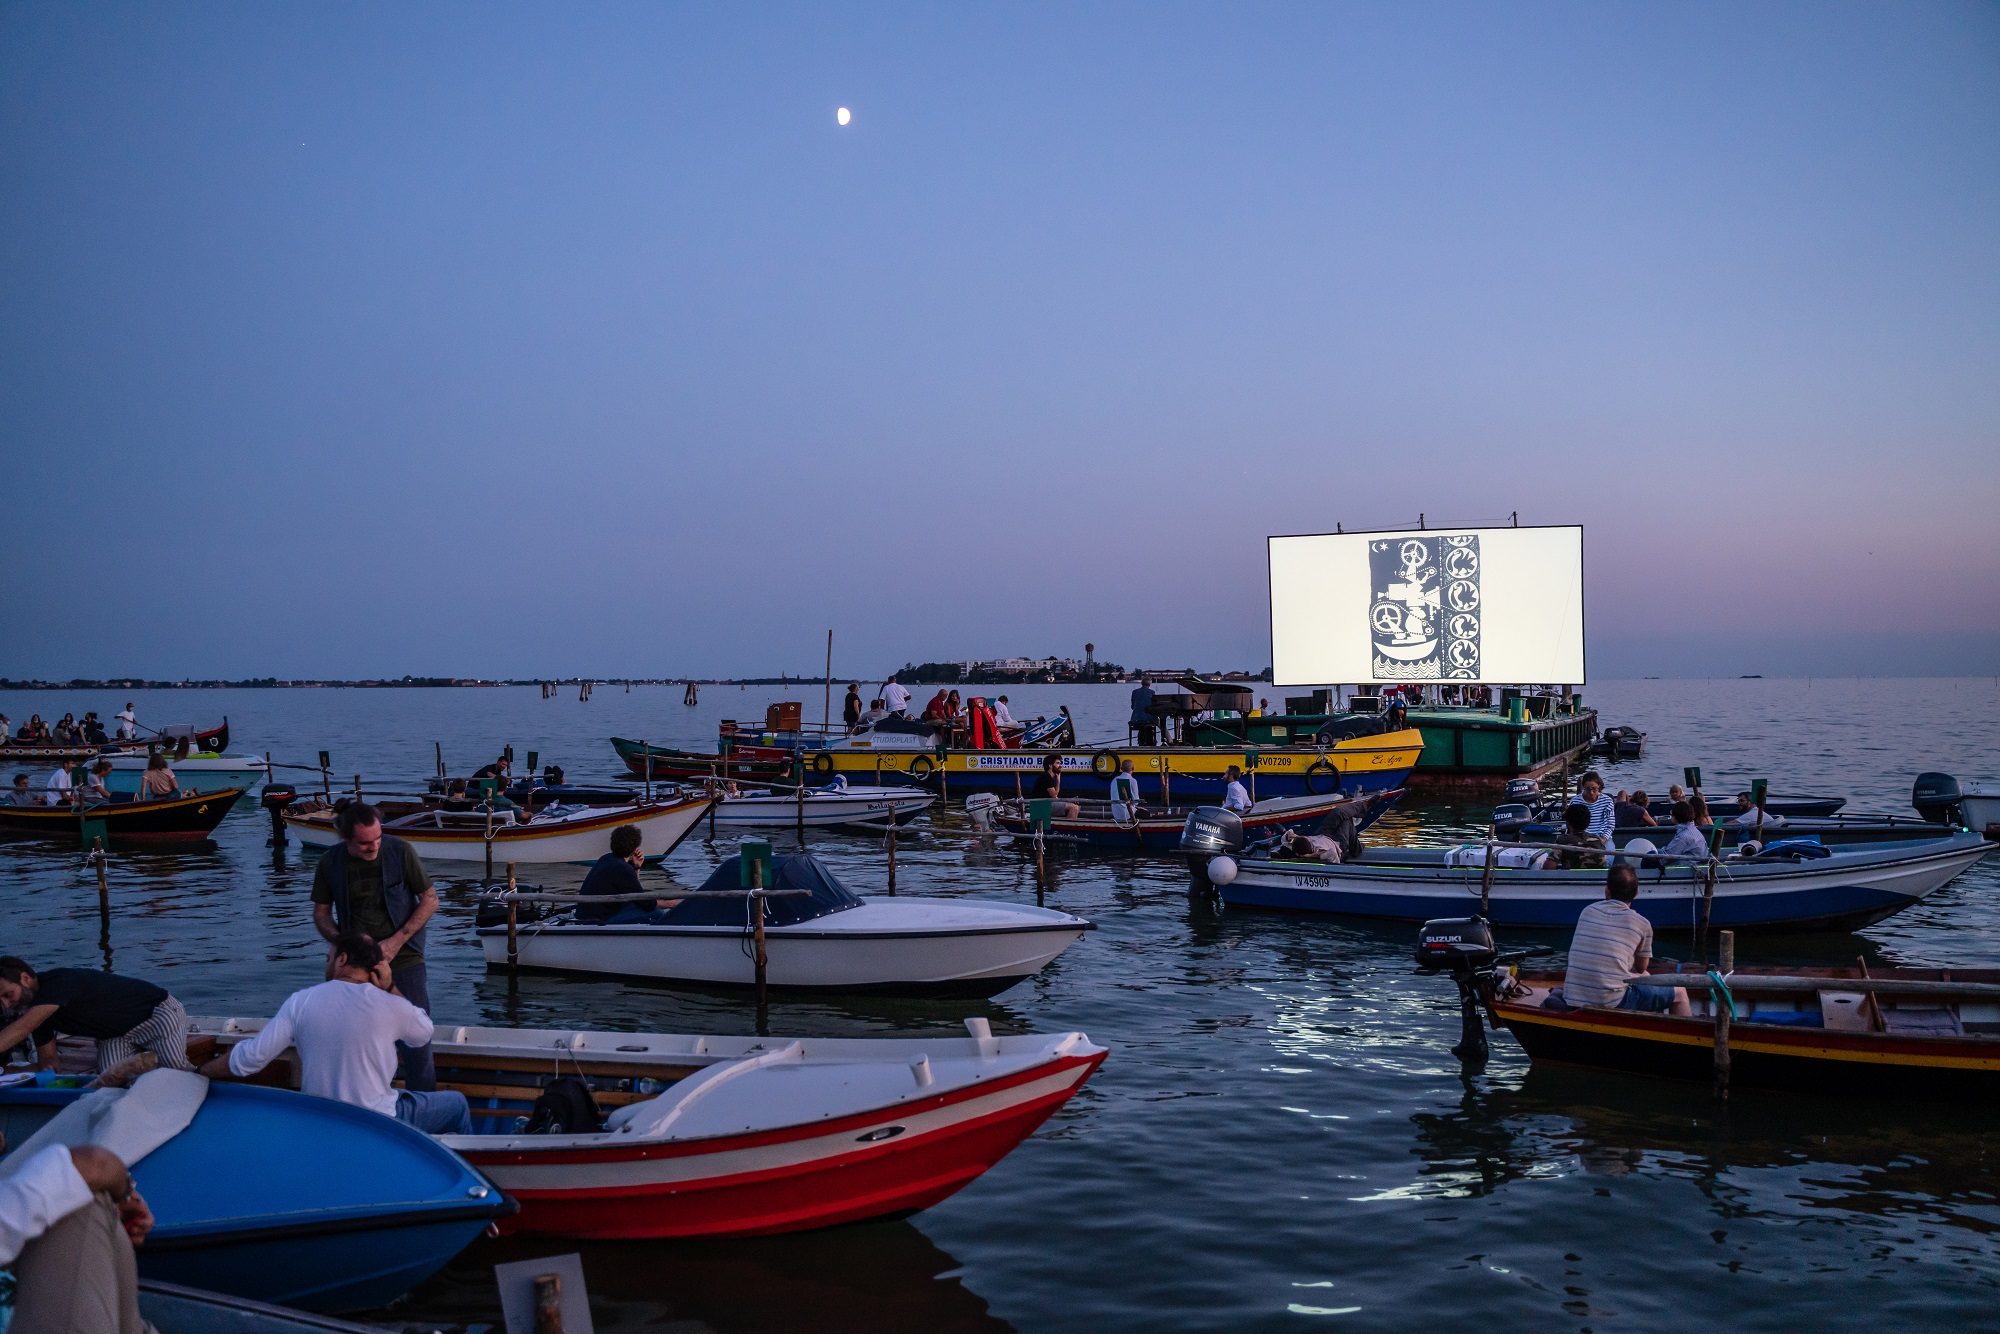 Venezia, le acque della laguna diventano un... cinema galleggiante, per il secondo anno